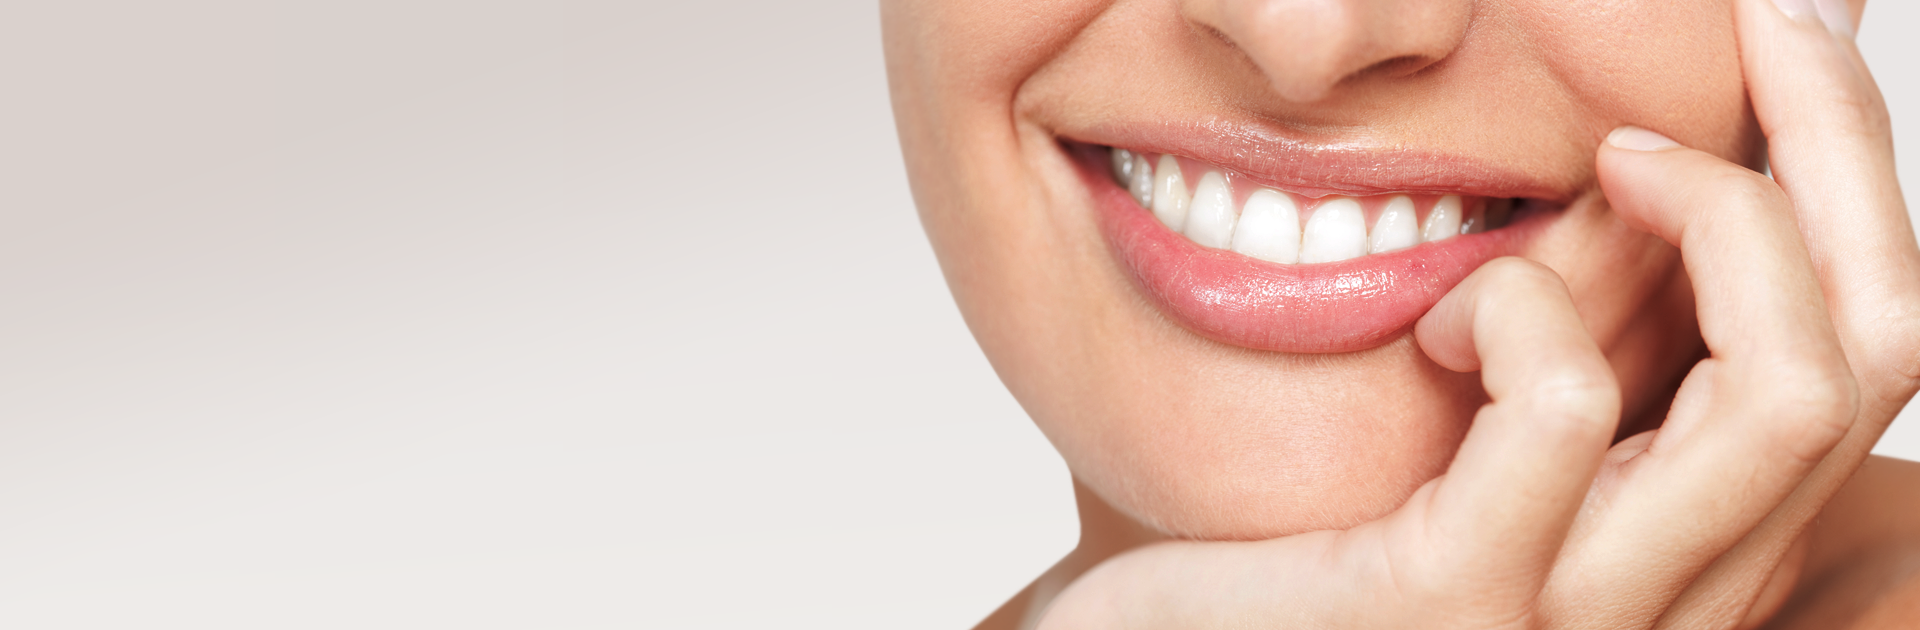 Эндодонтия – лечение корневых каналов зуба